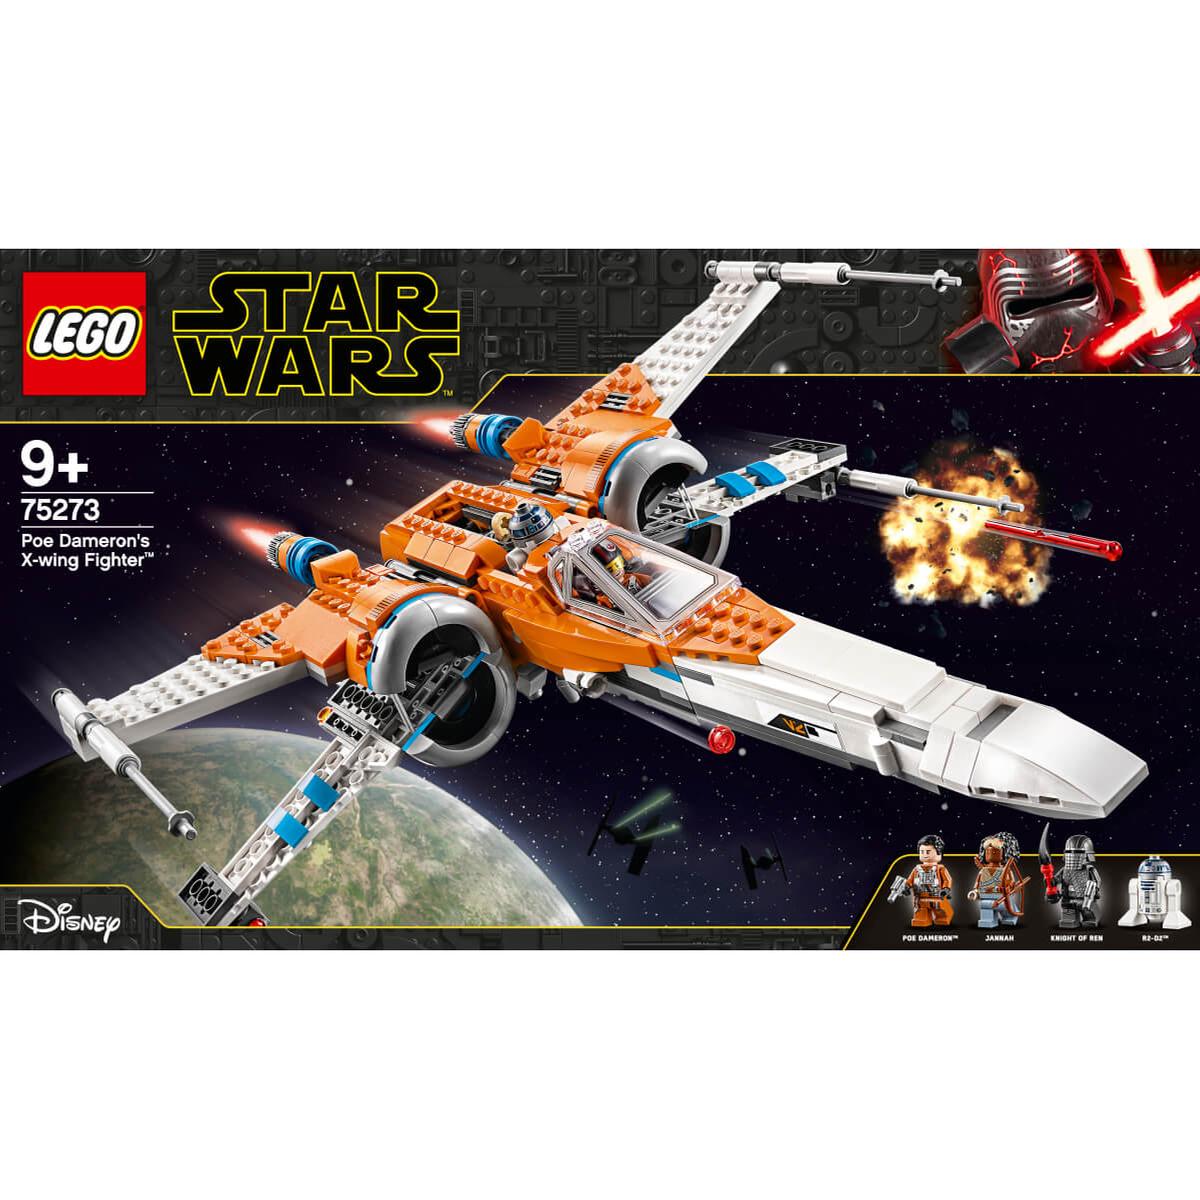 Adición helado Me preparé LEGO Star Wars - Caza Ala-X de Poe Dameron - 75273 | Lego Star Wars |  Toys"R"Us España